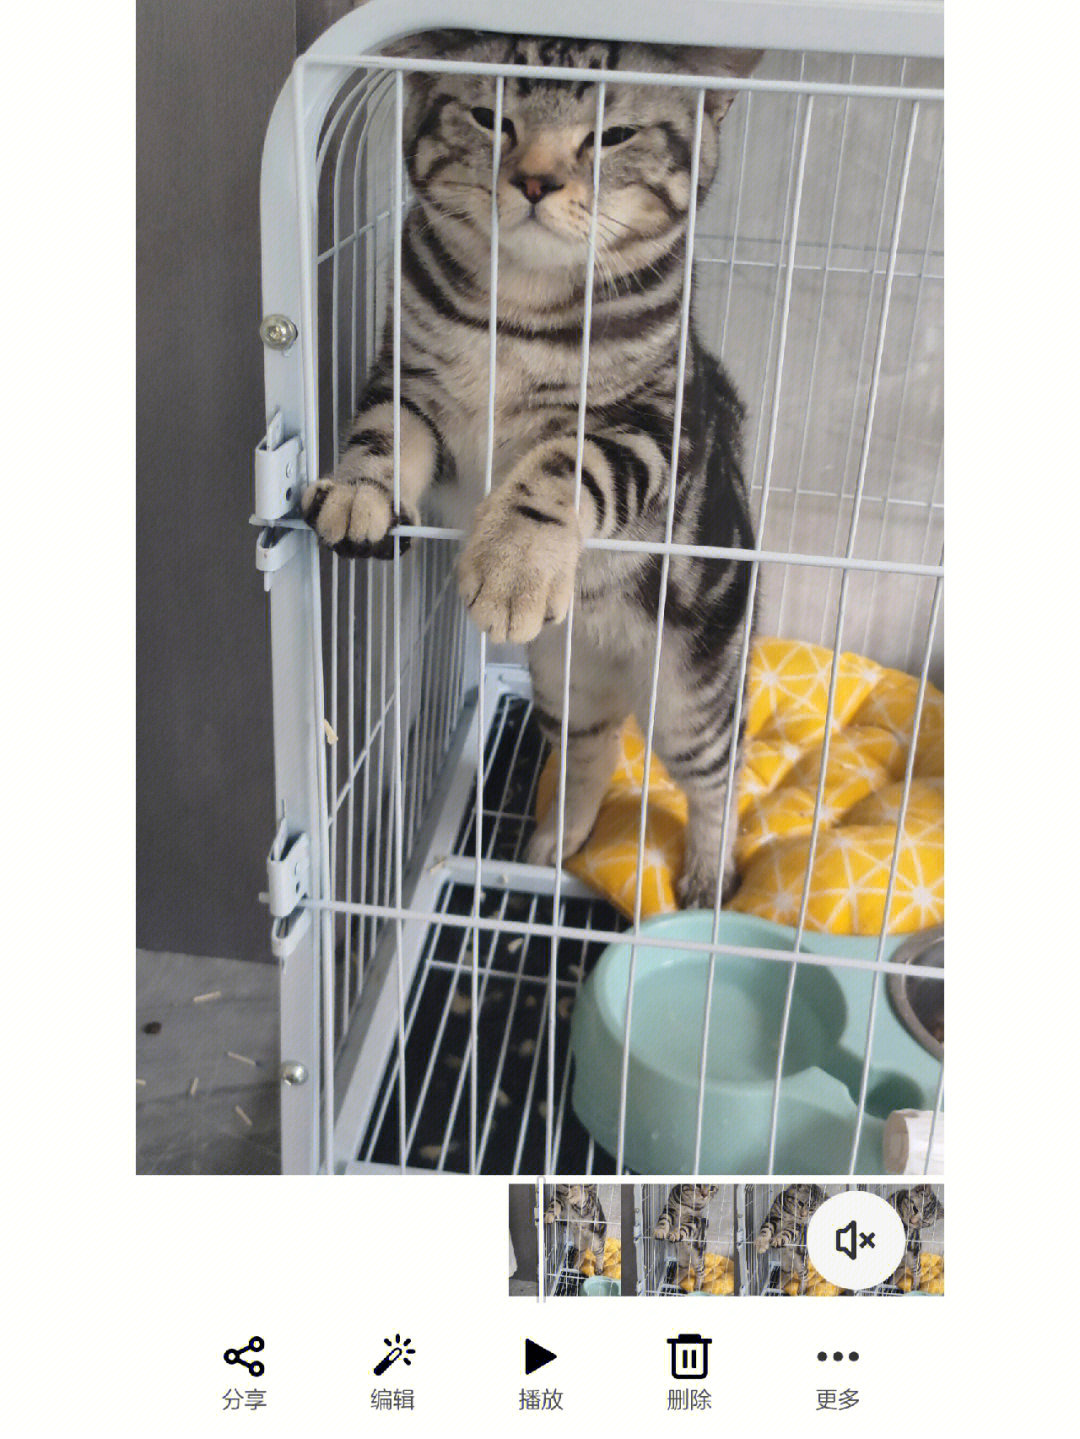 几张照片告诉你猫被关在笼子里的无奈